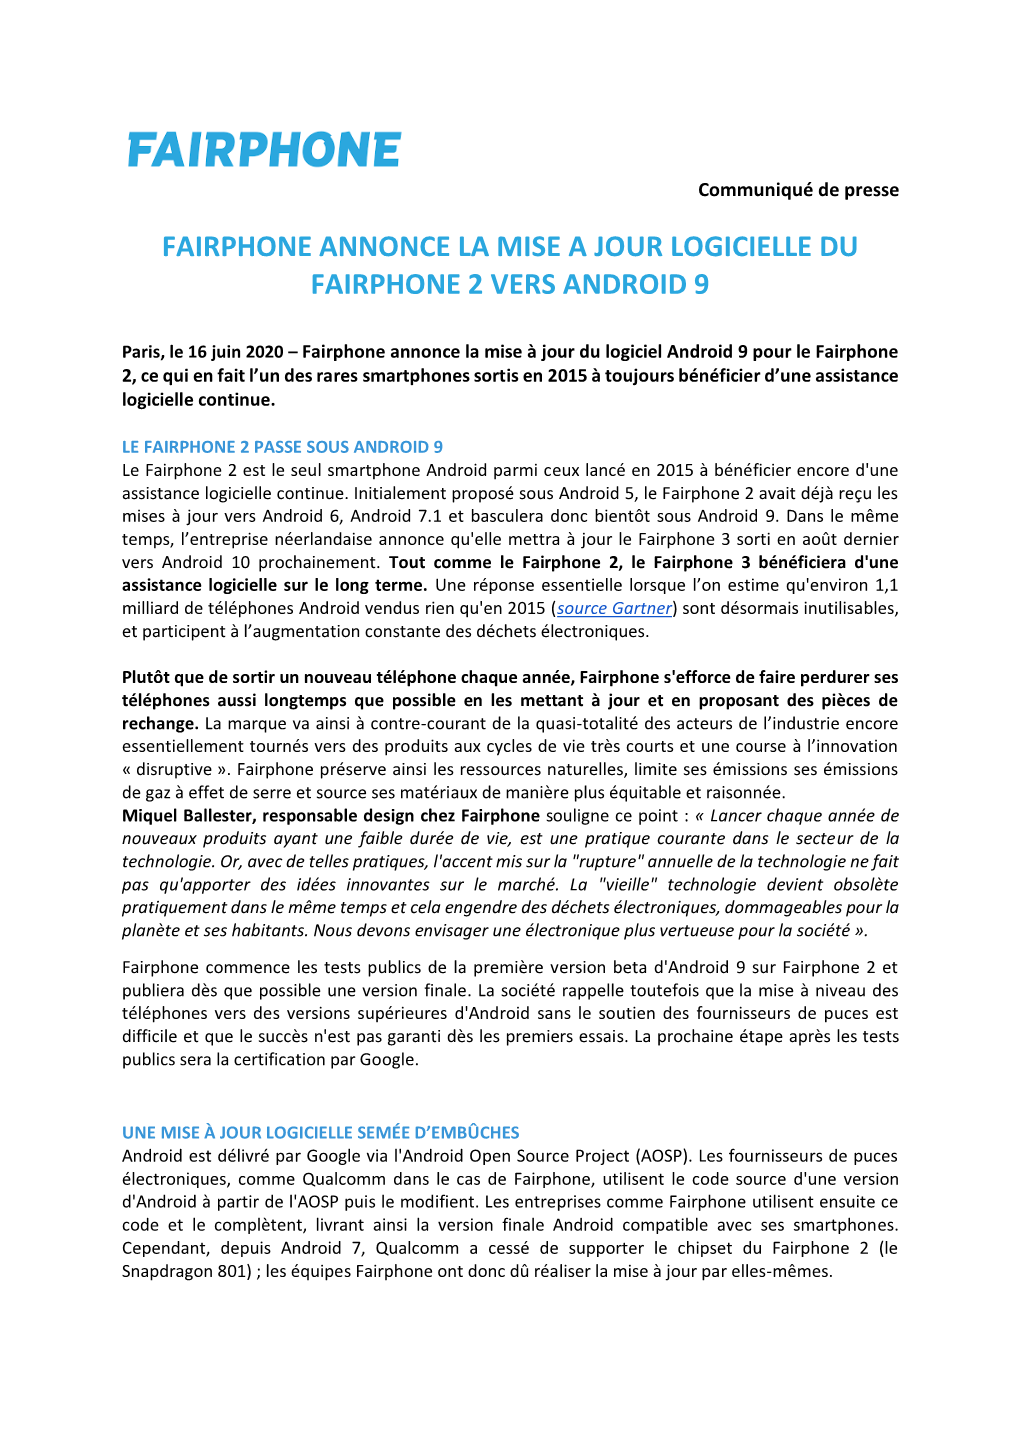 Fairphone Annonce La Mise a Jour Logicielle Du Fairphone 2 Vers Android 9